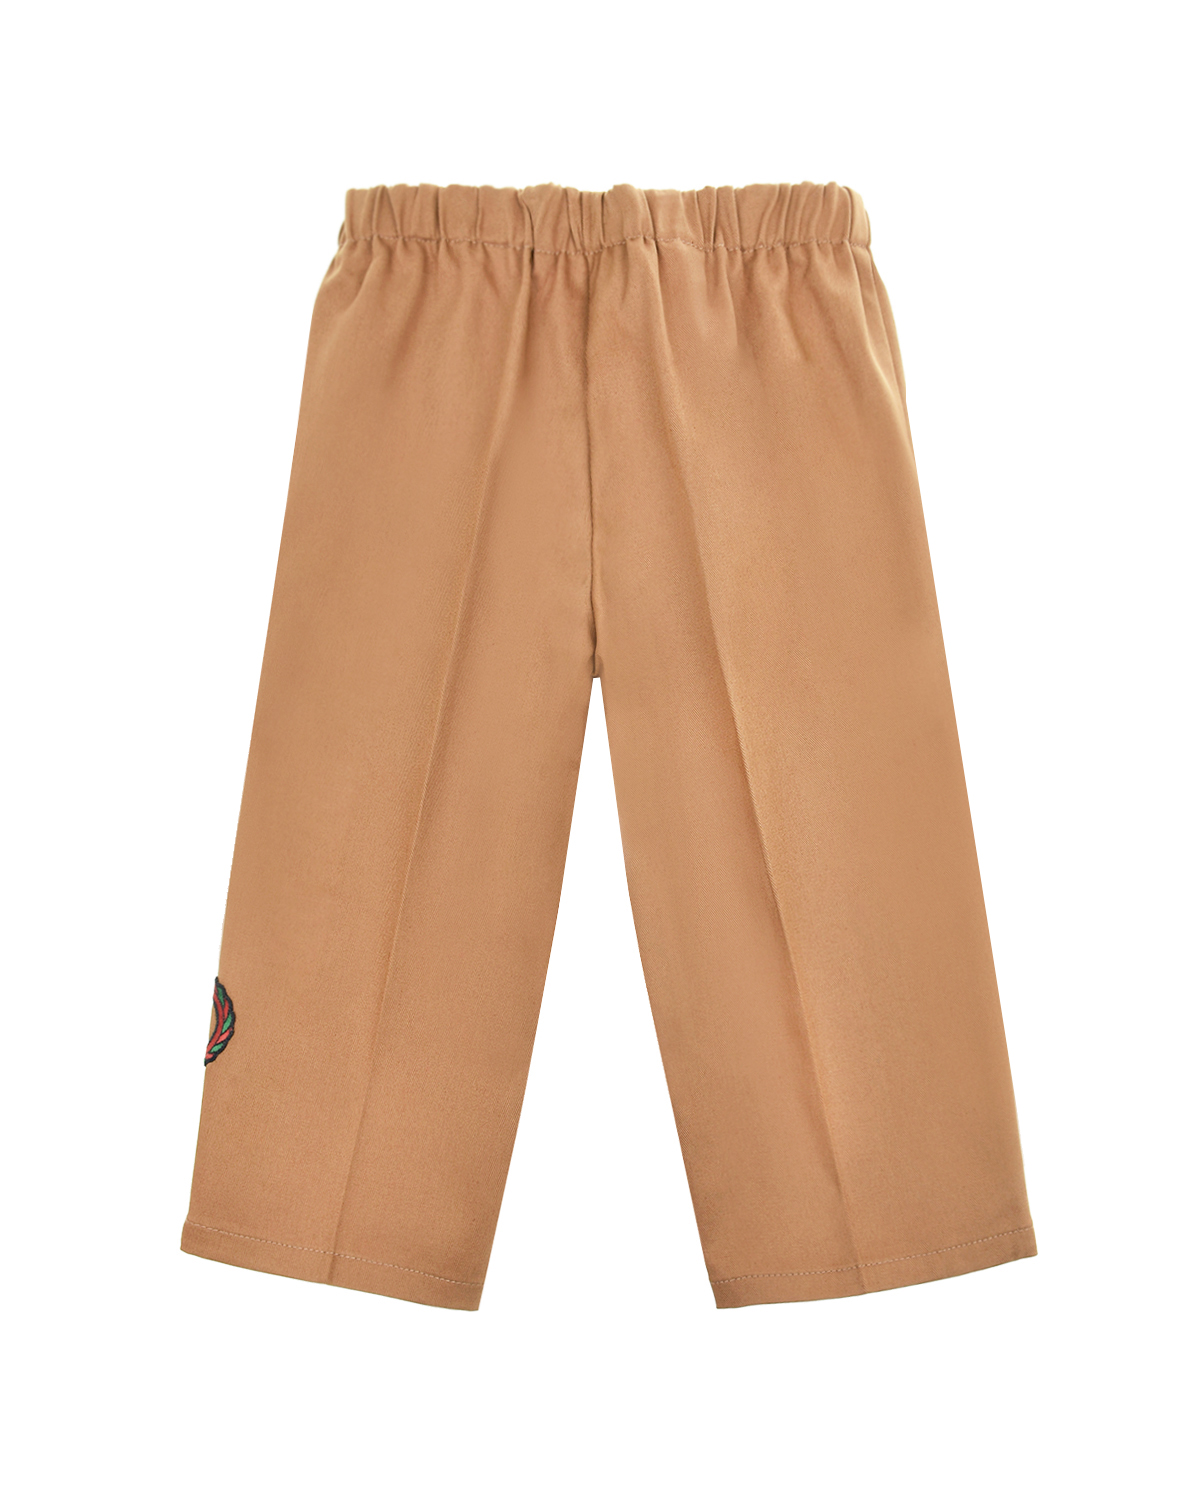 Прямые брюки с вышитым лампасом GUCCI детские, размер 92, цвет бежевый - фото 2